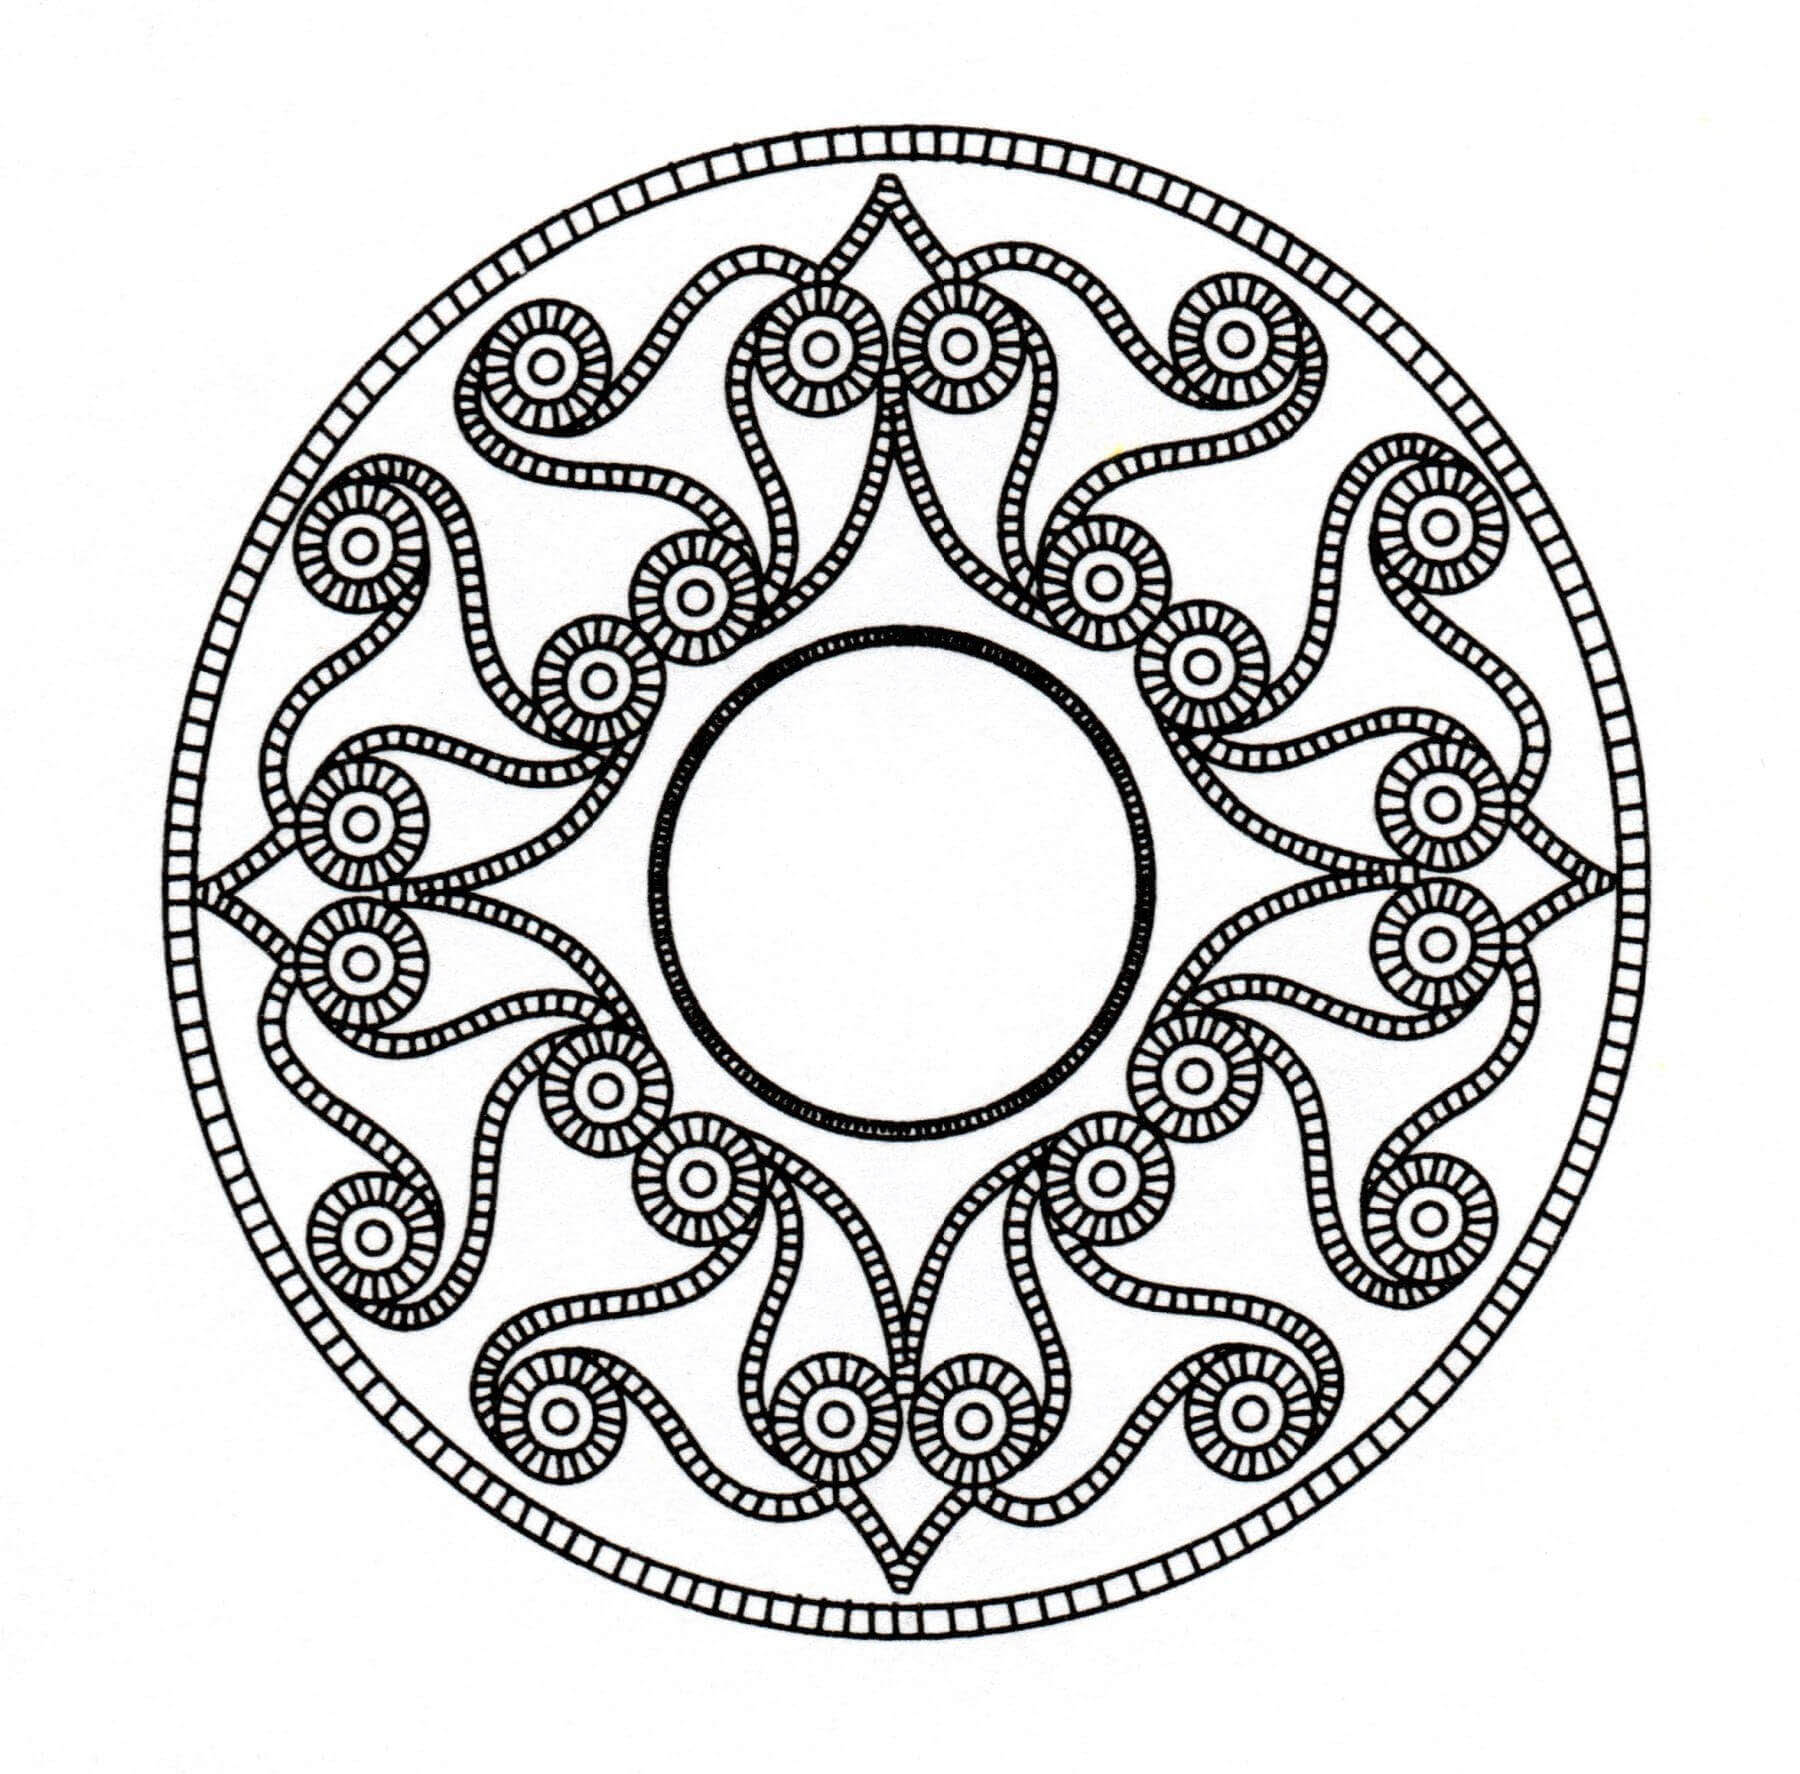 Wenn Sie ein 'keltisches' Mandala suchen, das nicht zu kompliziert zum Ausmalen ist, aber trotzdem einen relativen Schwierigkeitsgrad hat, ist dieses hier perfekt für Sie.